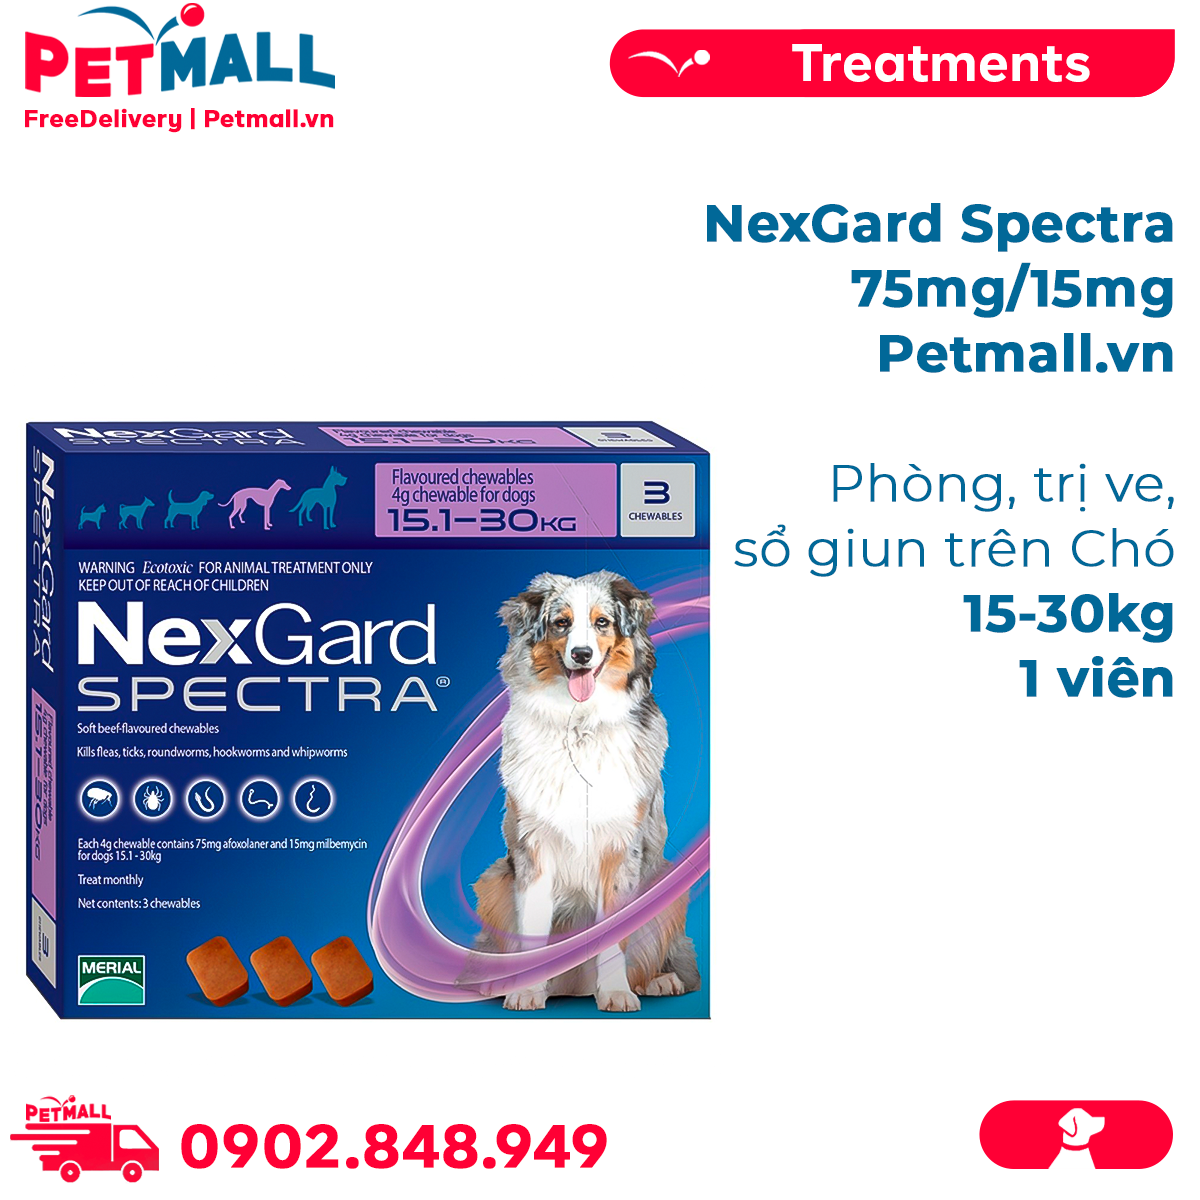 NexGard Spectra 75mg/15mg Phòng, trị ve, sổ giun trên Chó 15-30kg - 1viên Petmall